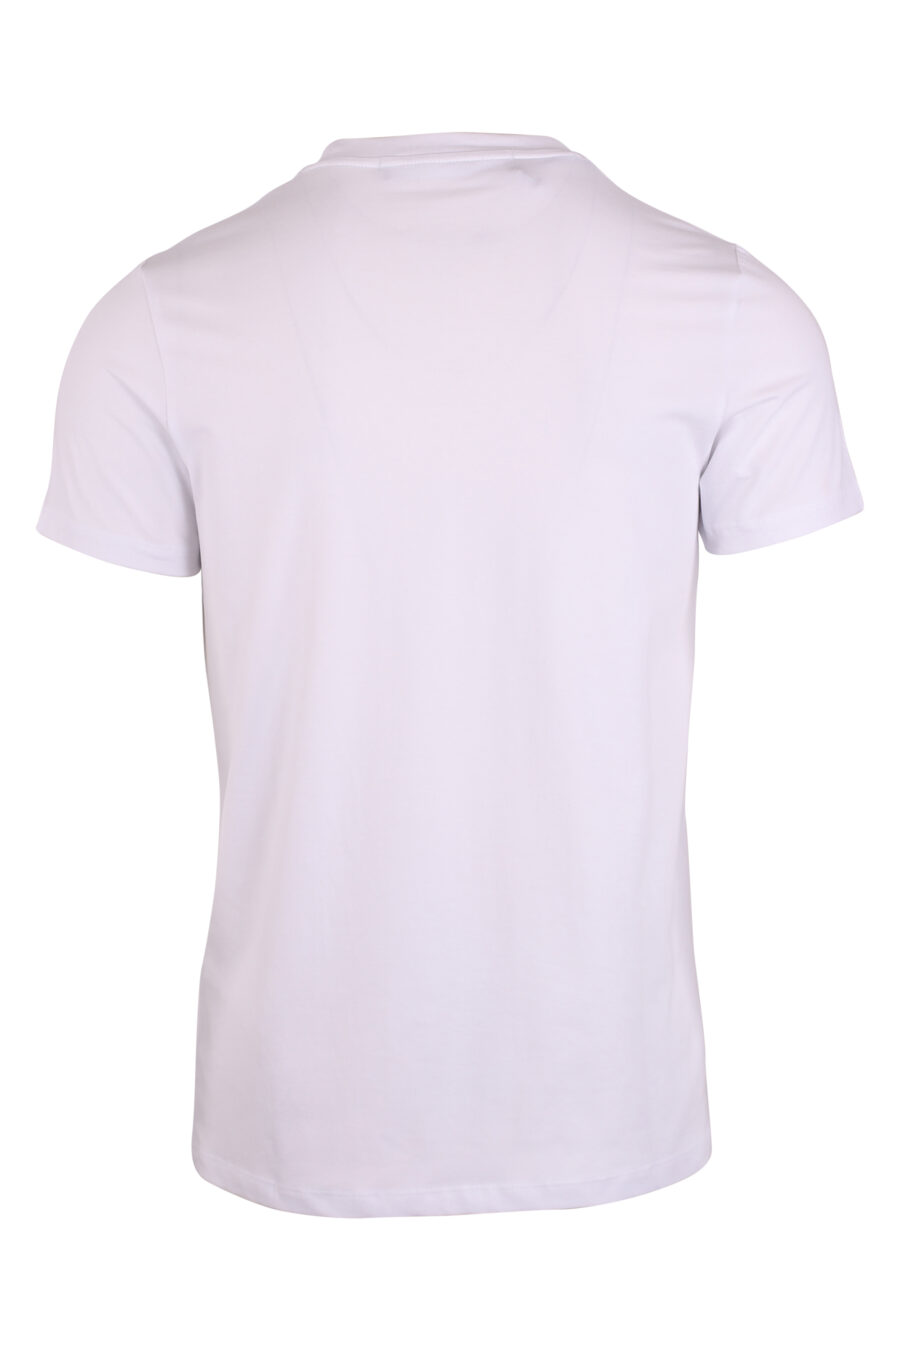 T-shirt blanc avec poche zippée et patch logo blanc - IMG 9474